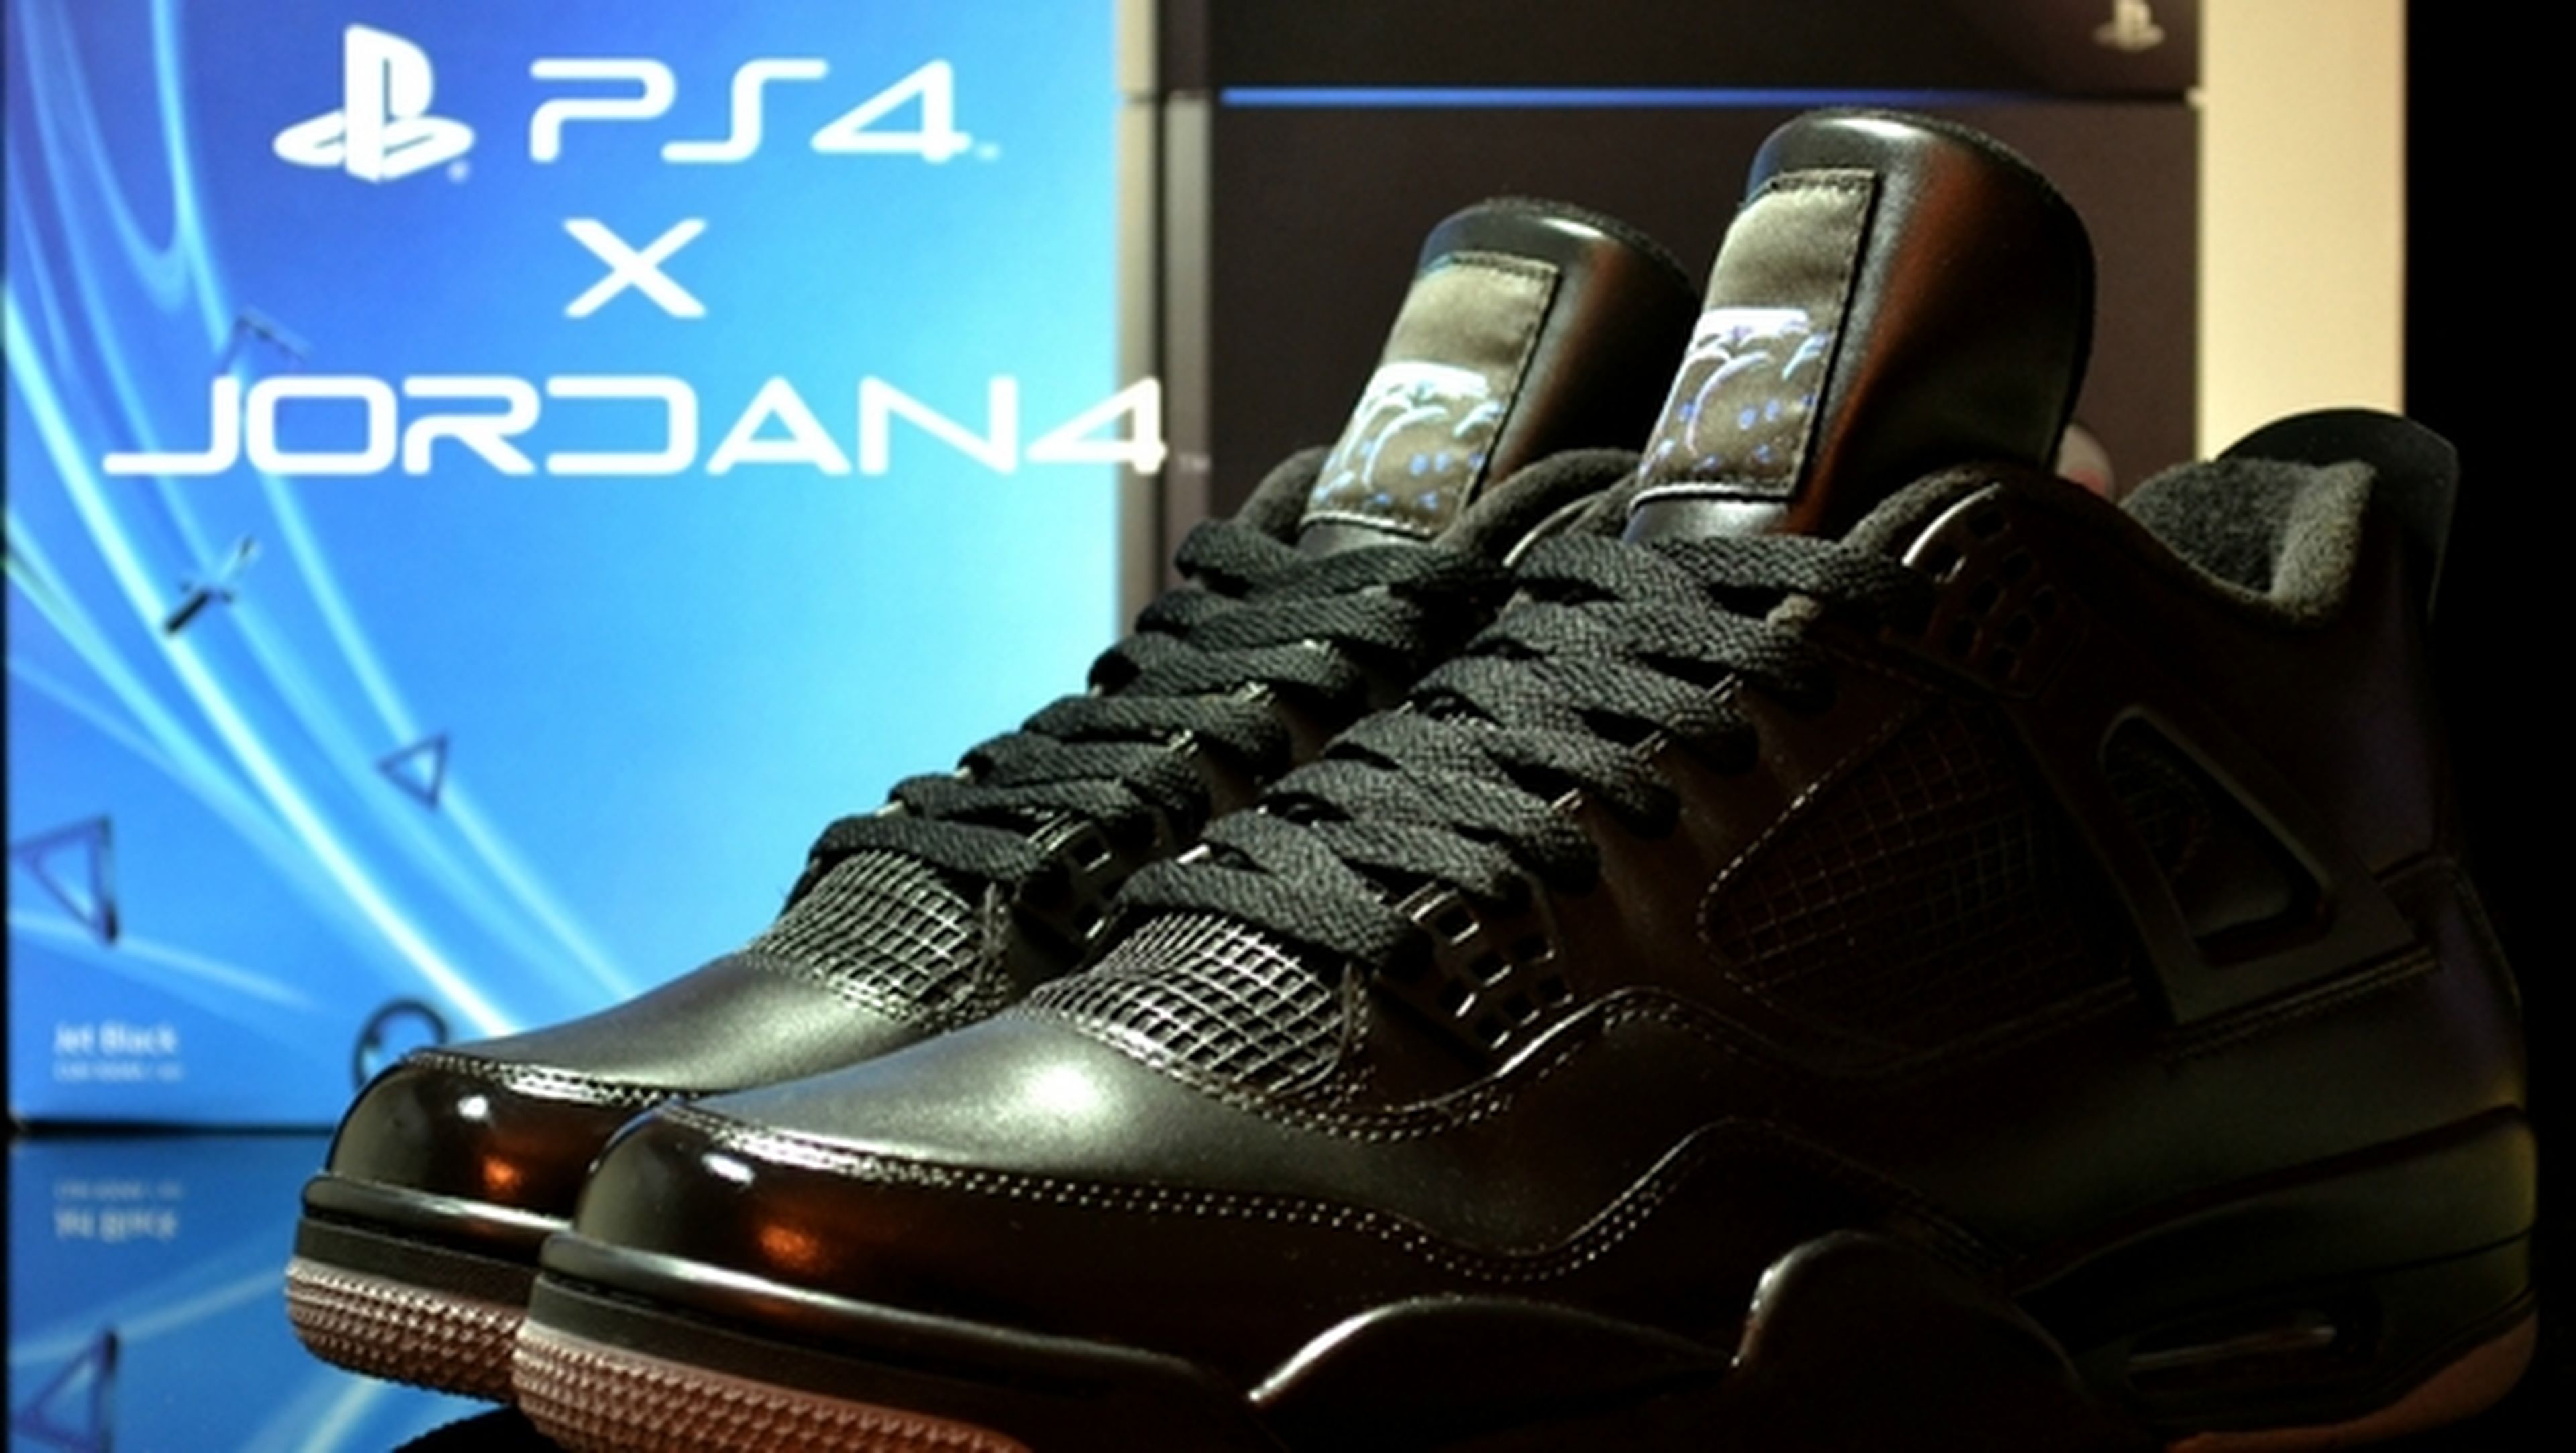 Crean unos sneakers, unas zapatillas deportivas Air Jordan PS4 tuneadas, con puerto HDMI.